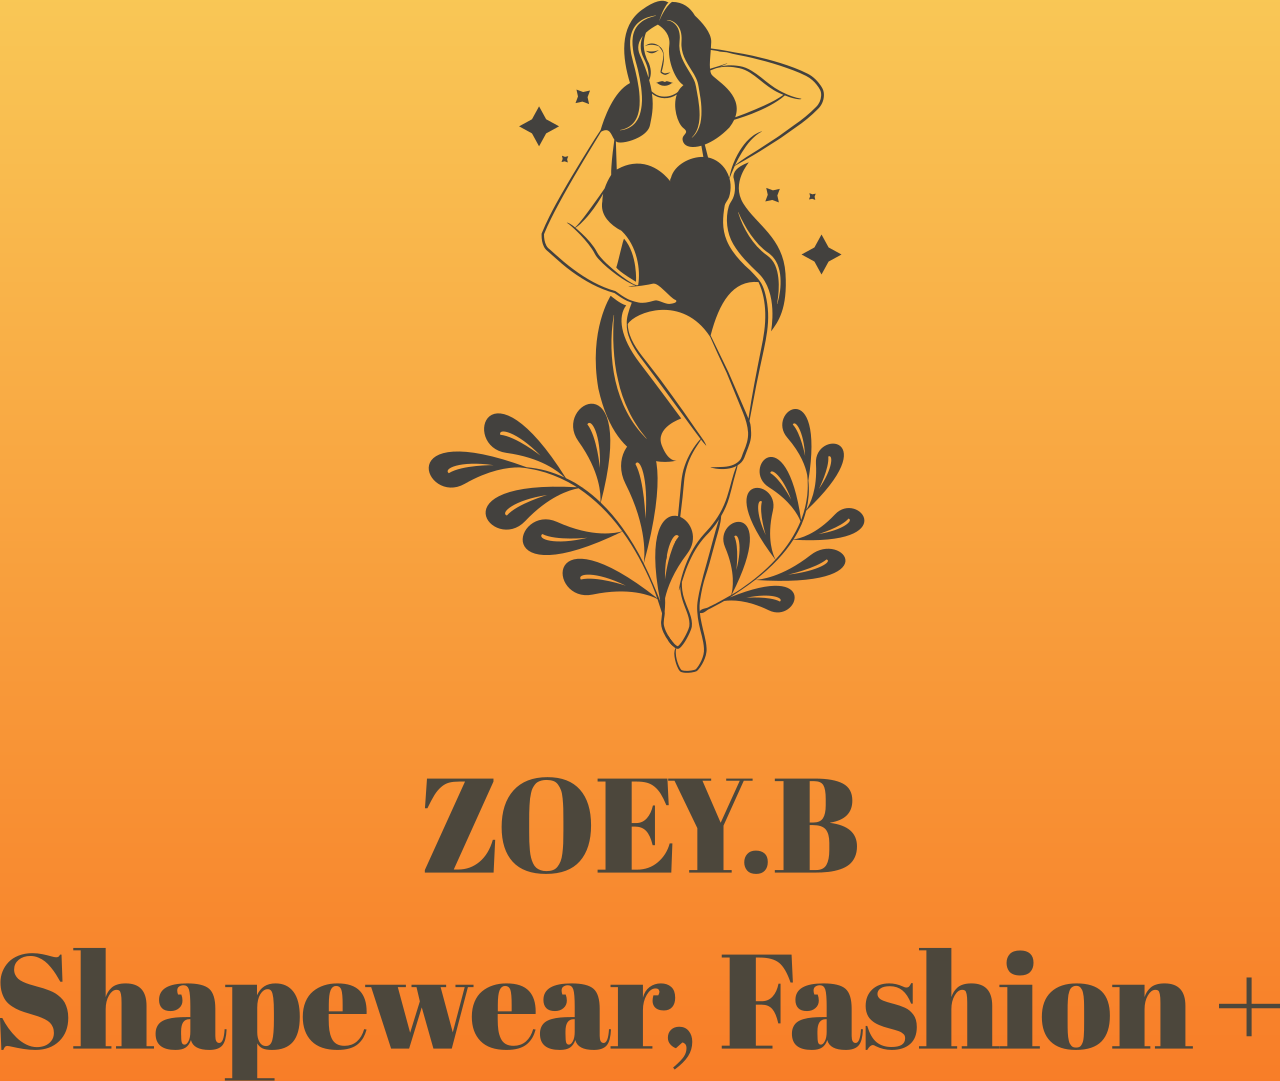 ZOEY. B

SHAPEWEAR, FASHION+'s web page